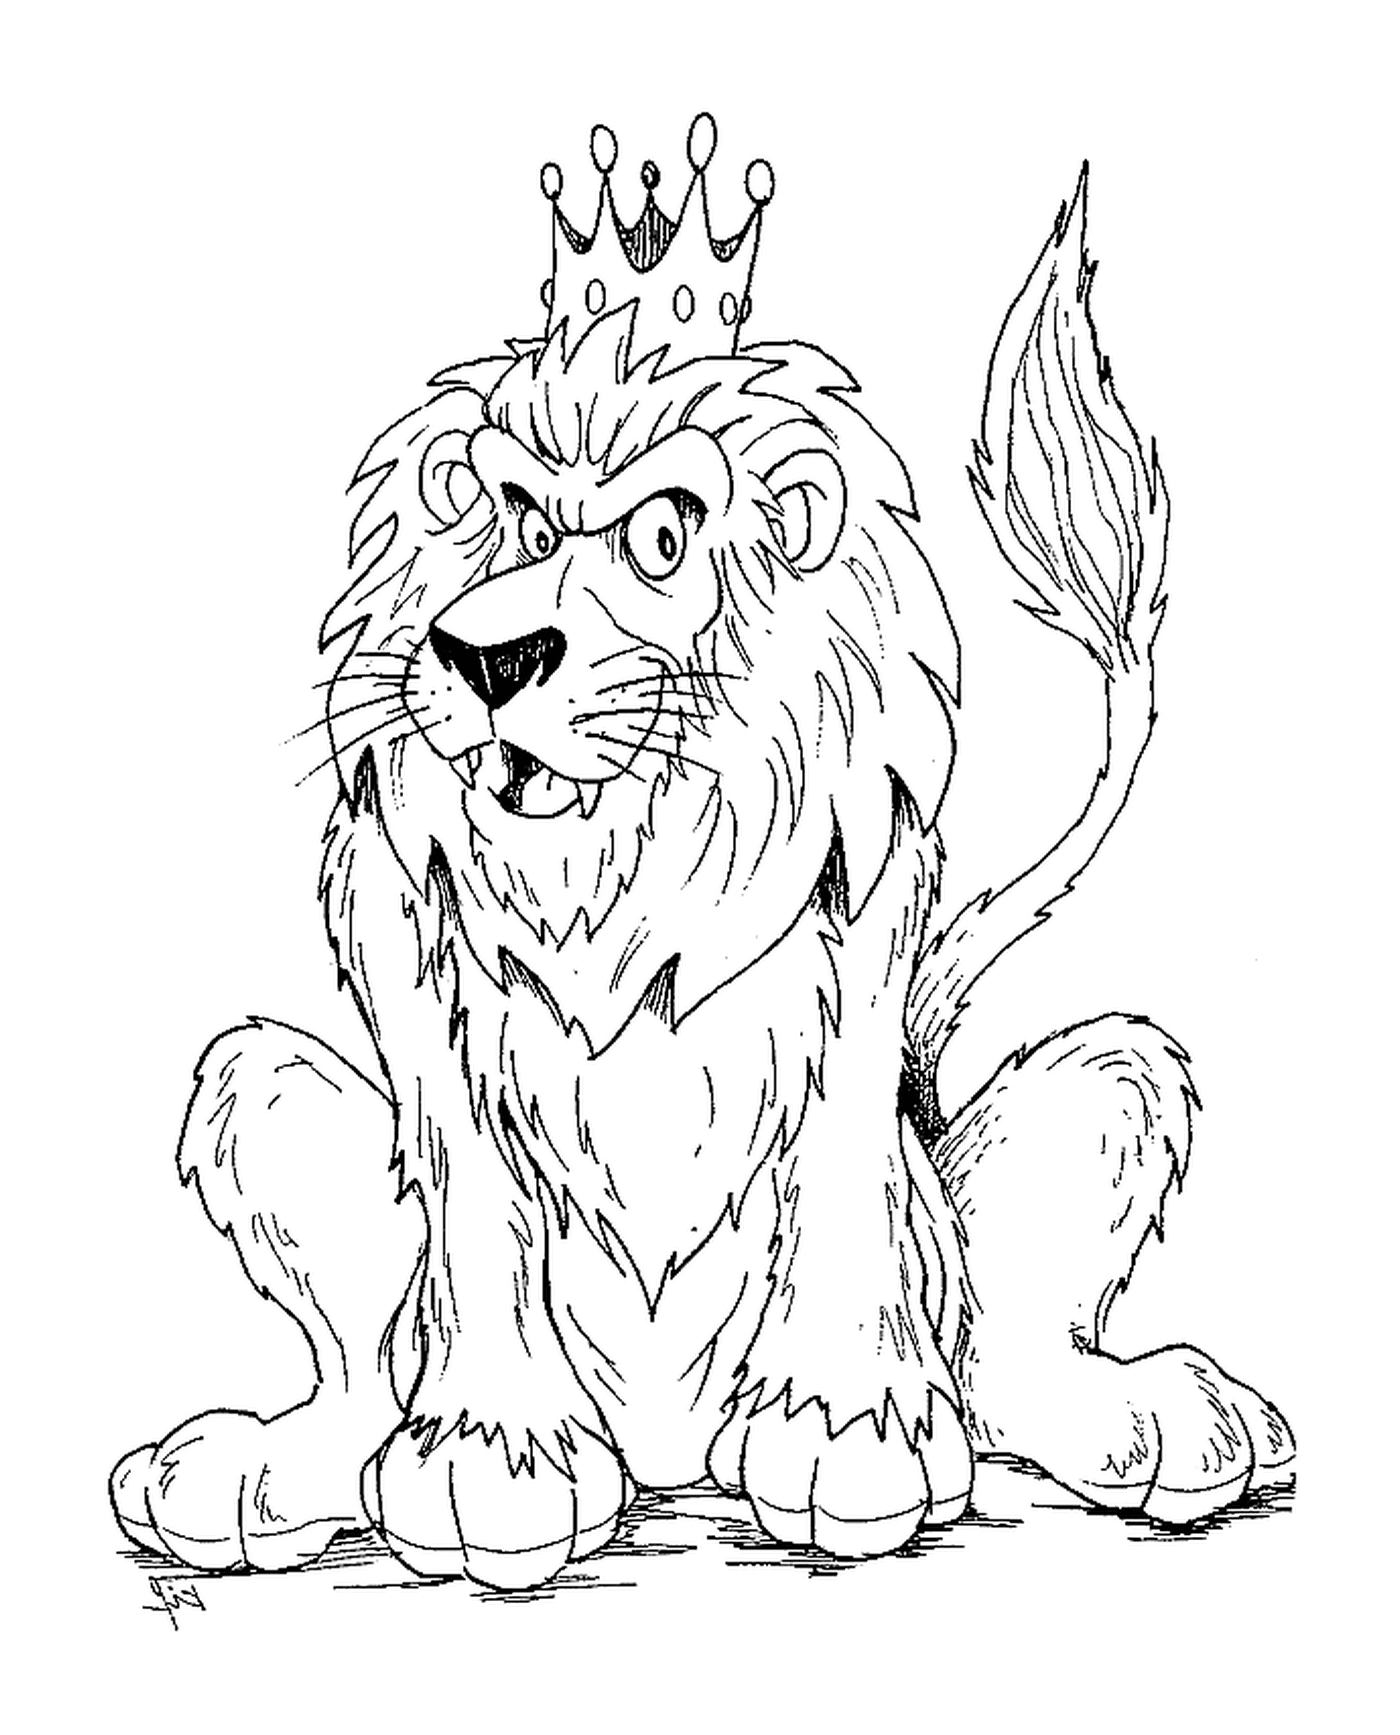  León con corona real 